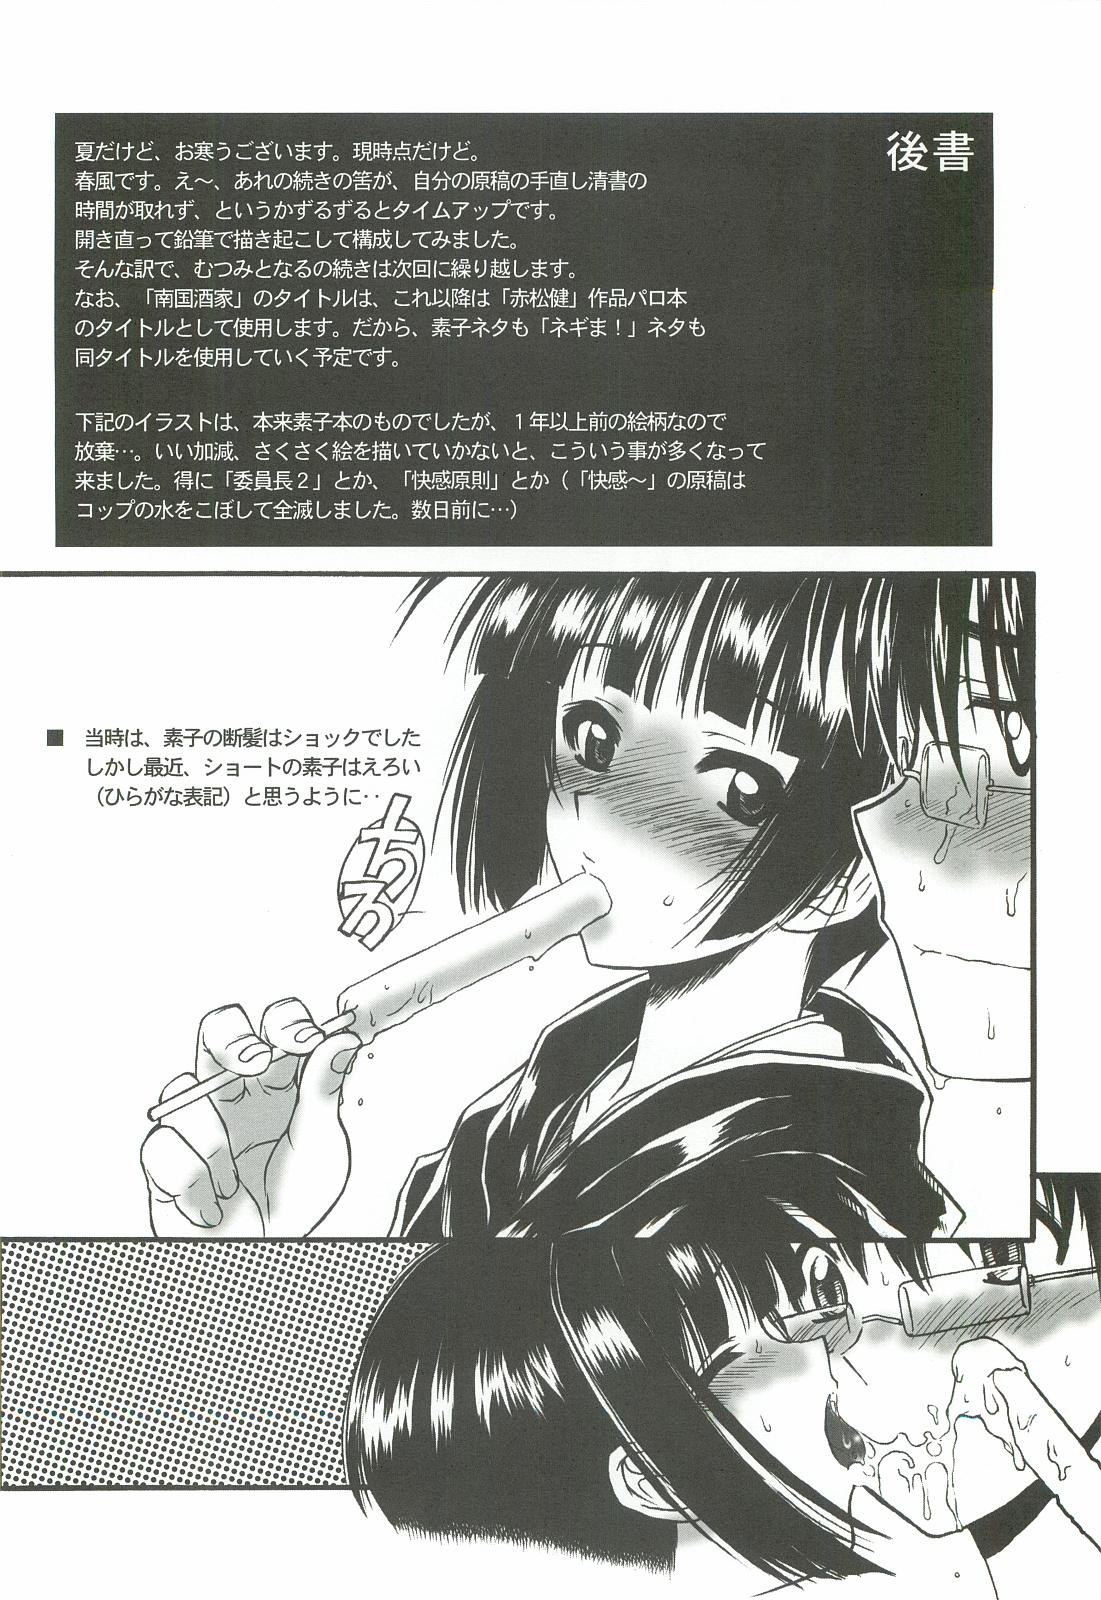 Cogiendo Zoku Nangoku Shuka - Mahou sensei negima Love hina Camgirls - Page 29